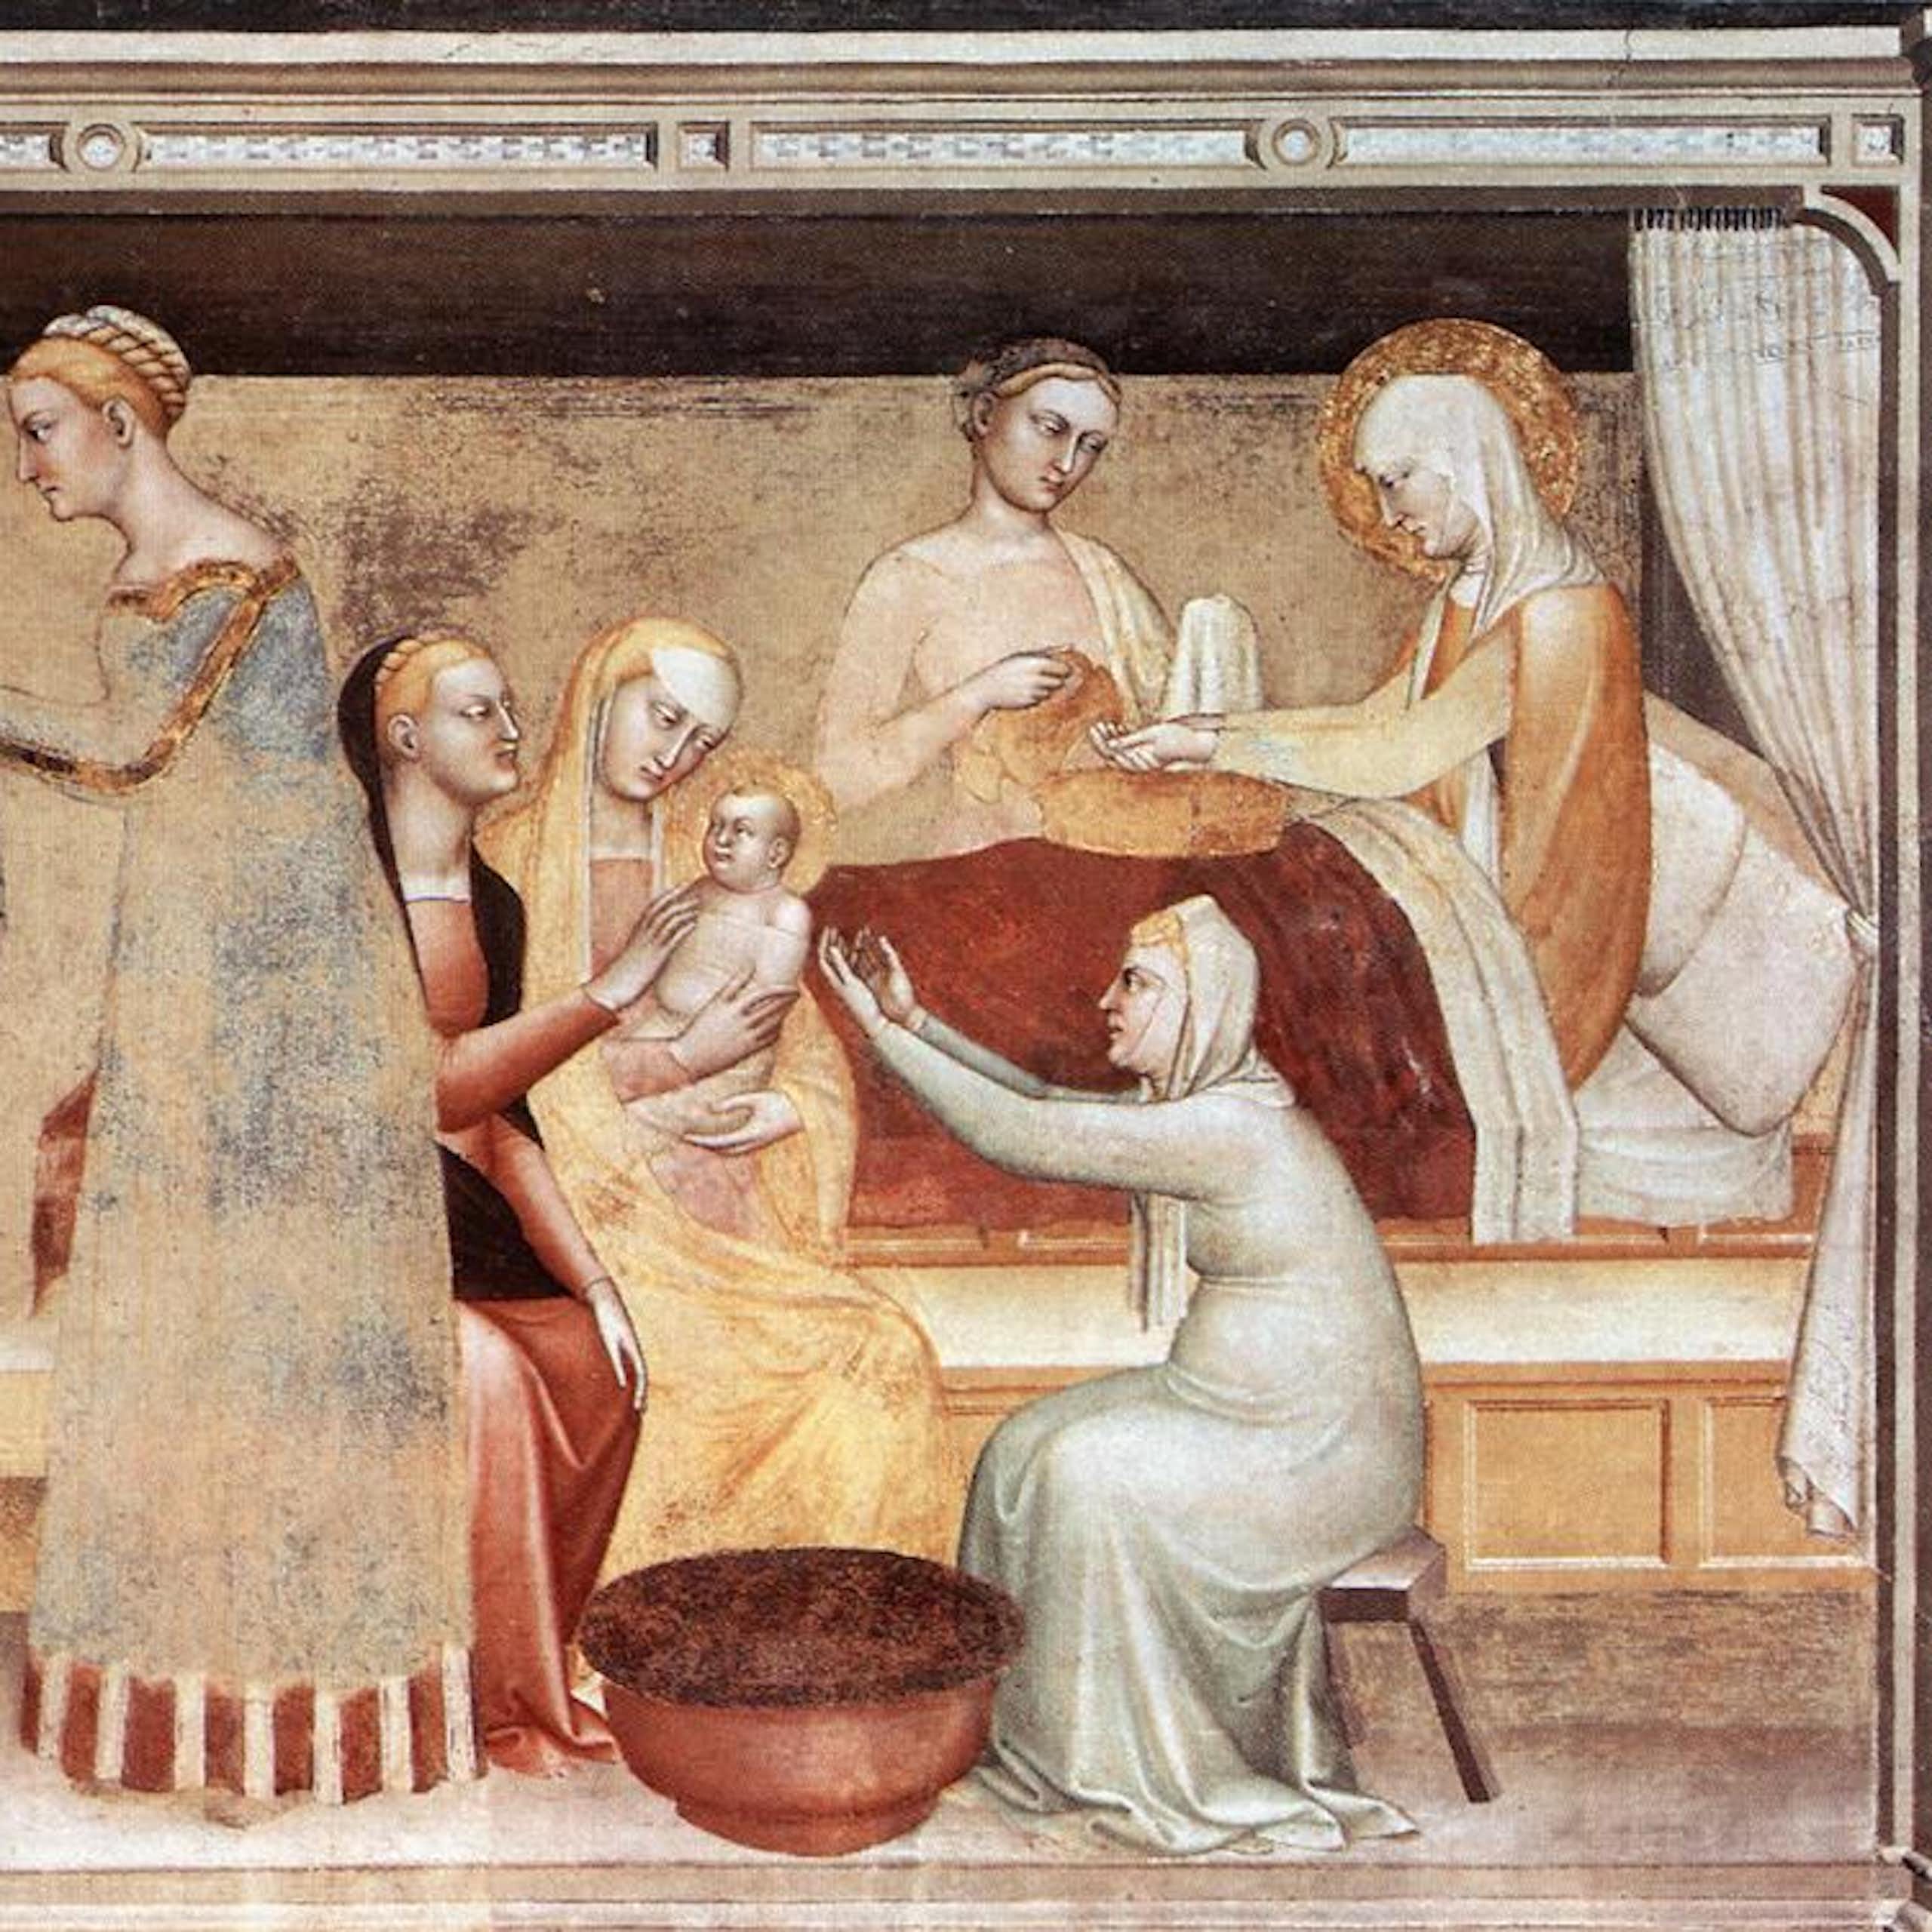 Pintura medieval en la que una mujer da a luz a un bebé, rodeada de más mujeres.